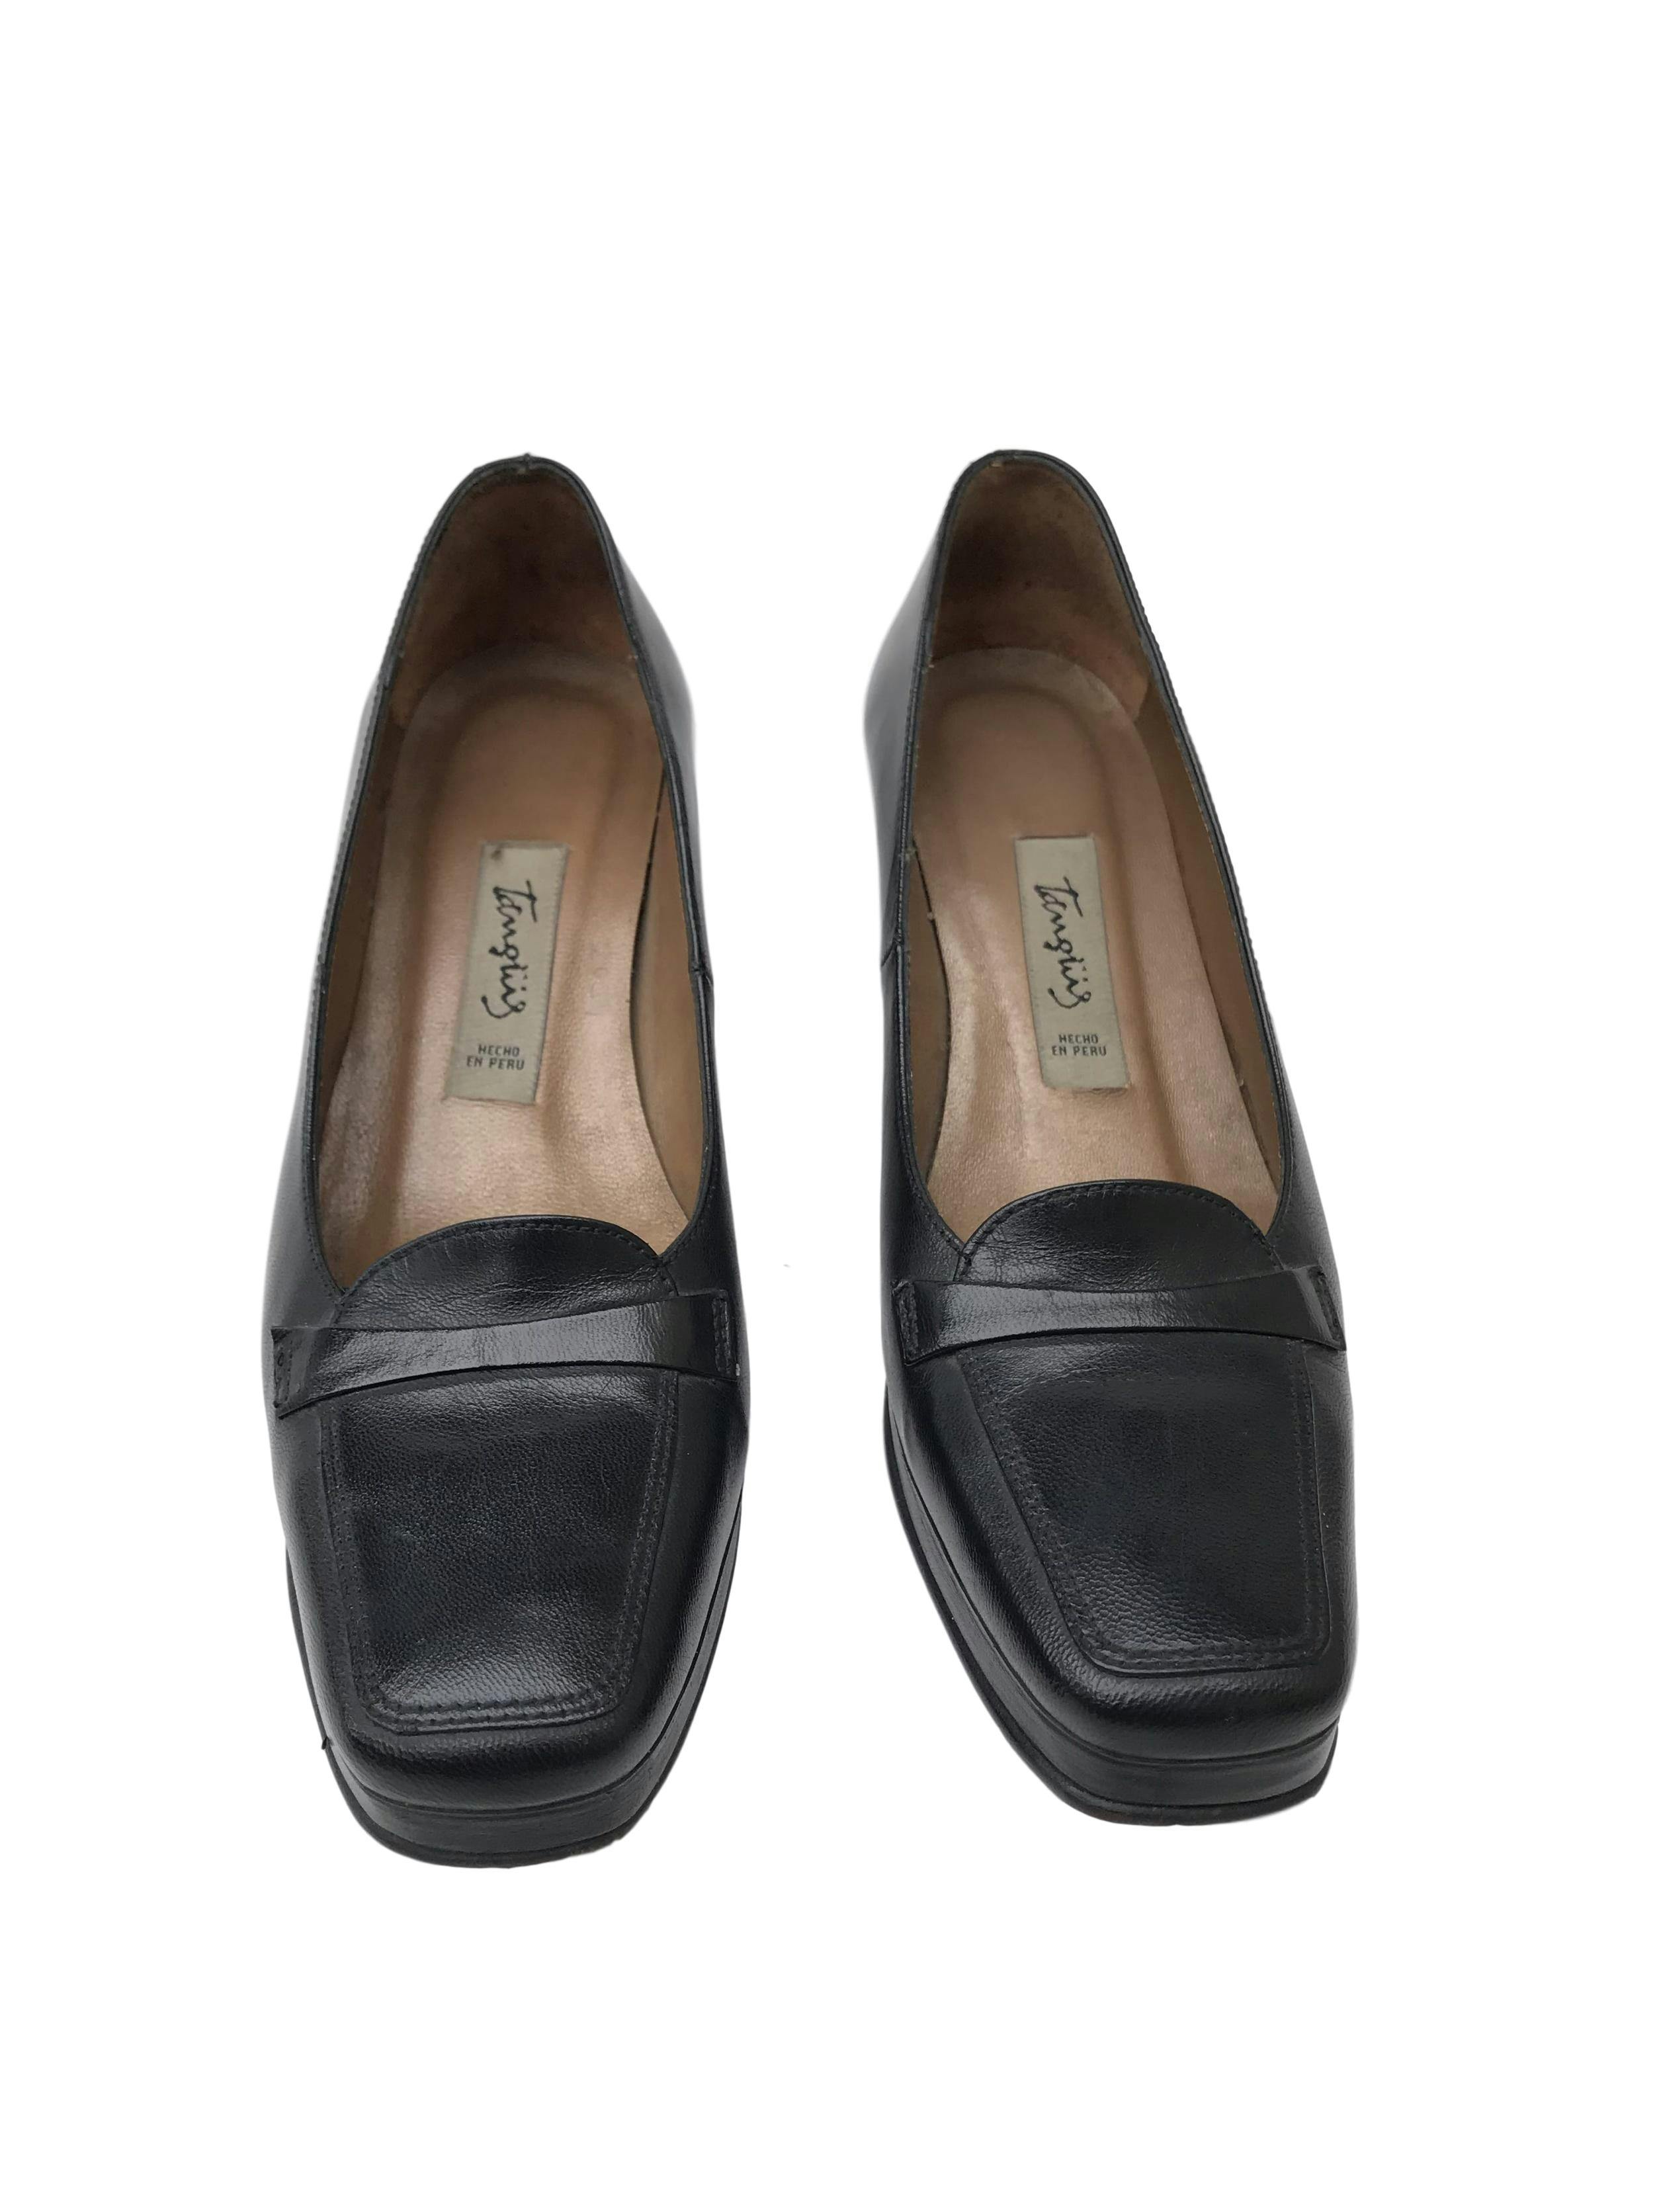 Zapatos Tanguis 100% cuero negro, taco 5. Estado 9/10. Precio original S/ 200